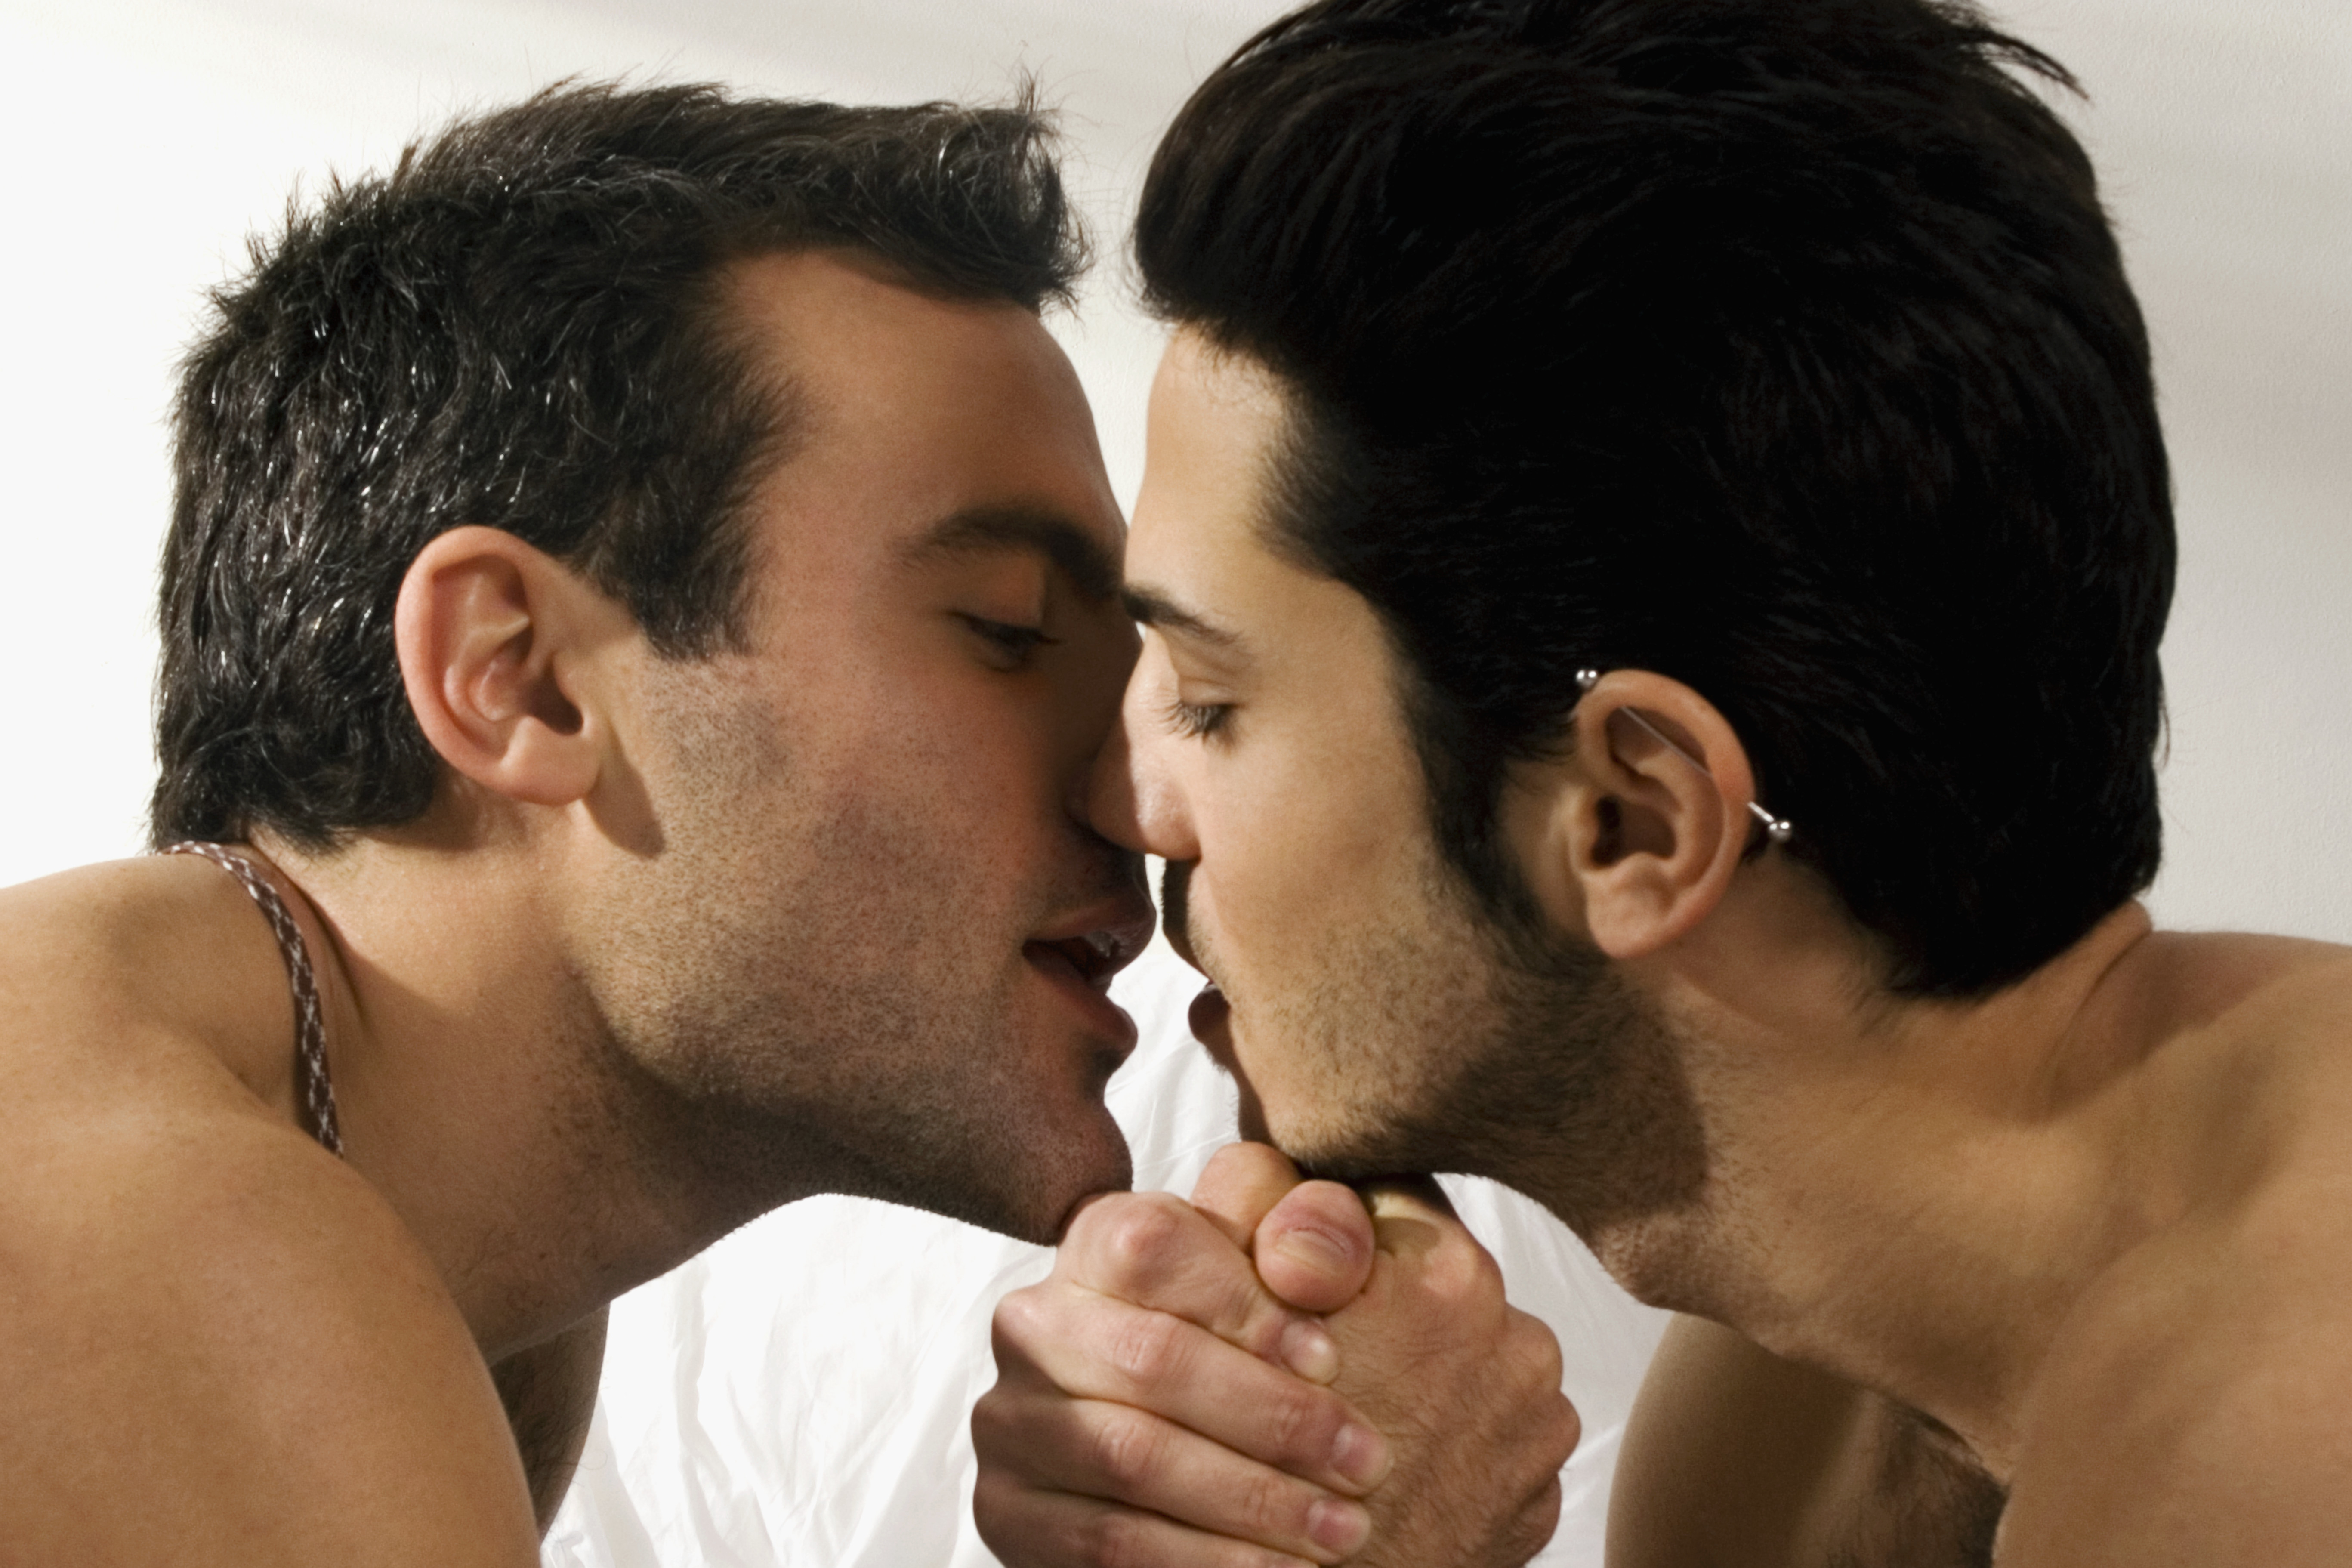 Объявления би мужчин. Любовь между мужчинами. Мужская любовь. Поцелуй парней. Гомосексуальные мужчины.